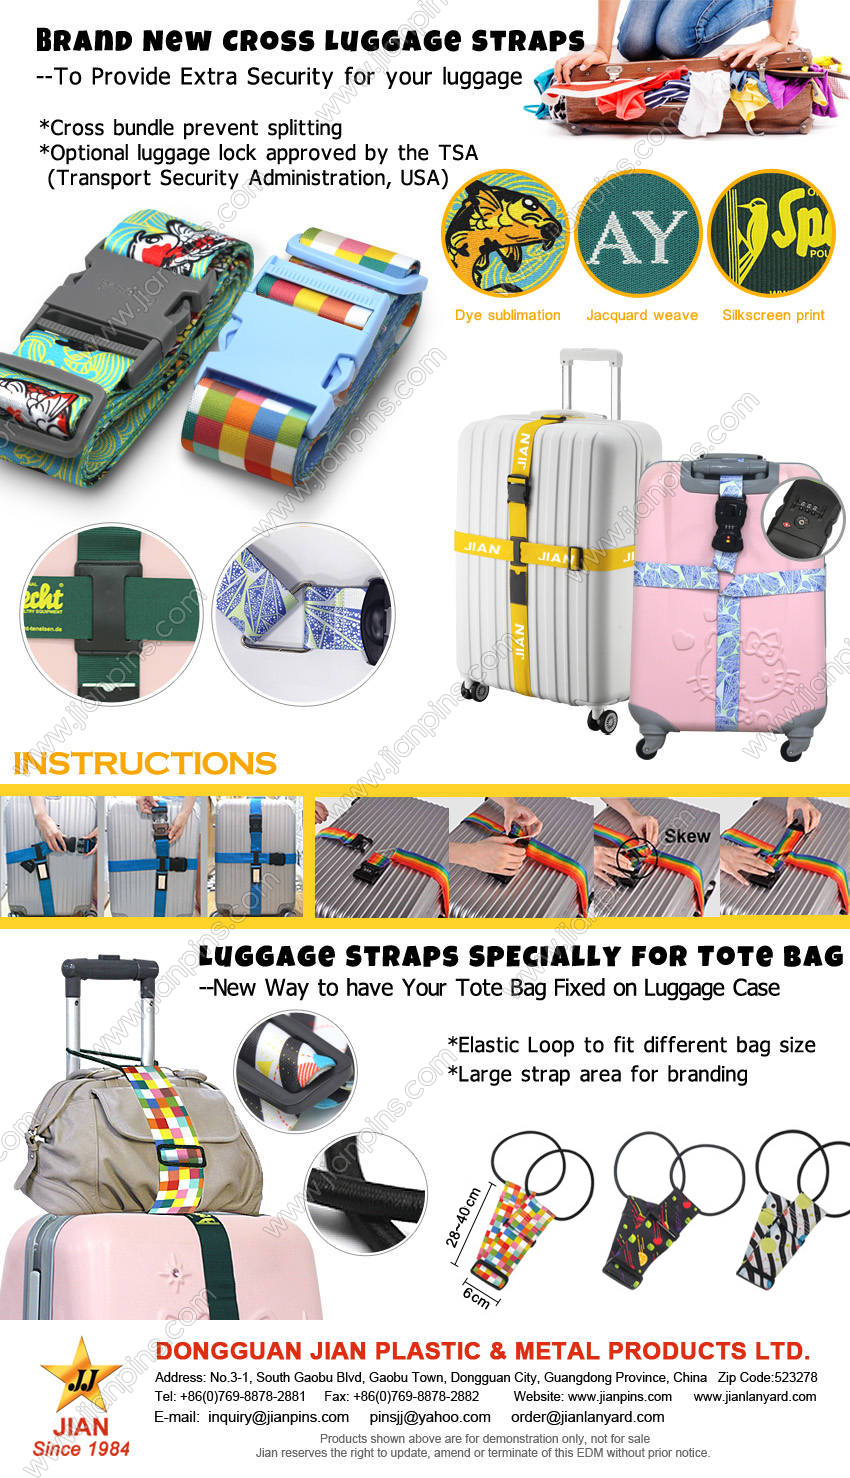 Helt nye Cross Luggage Straps gir ekstra sikkerhet for bagasjen din